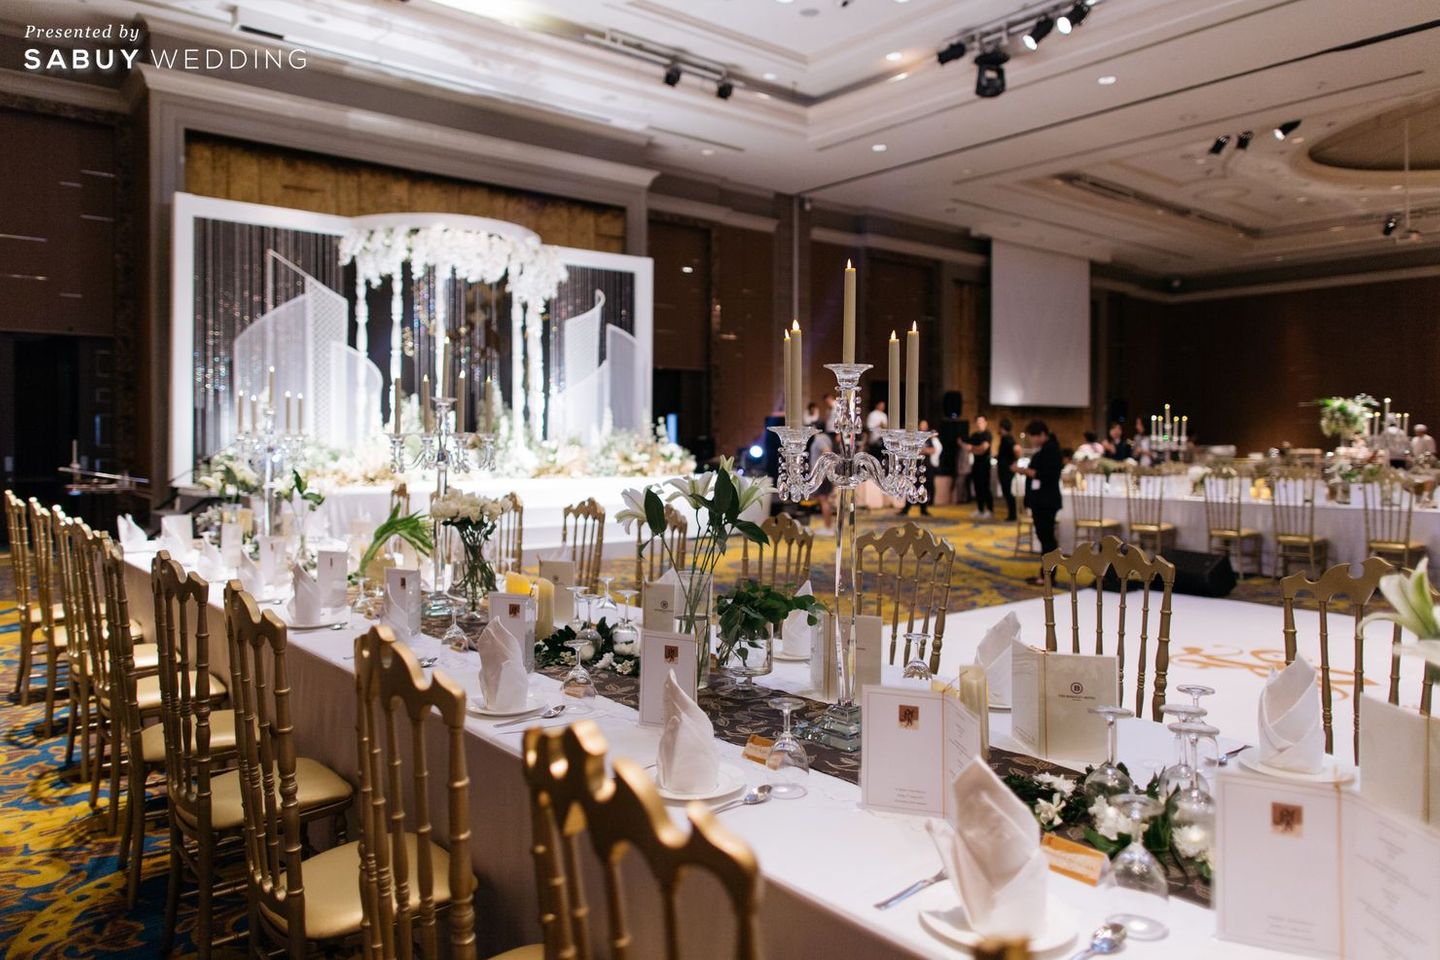 โรงแรม,ตกแต่งงานแต่งงาน,weddingplanner รีวิวงานแต่งไทยประยุกต์ สวยคลาสสิกด้วยโทนขาวทอง @ The Berkeley Hotel Pratunam